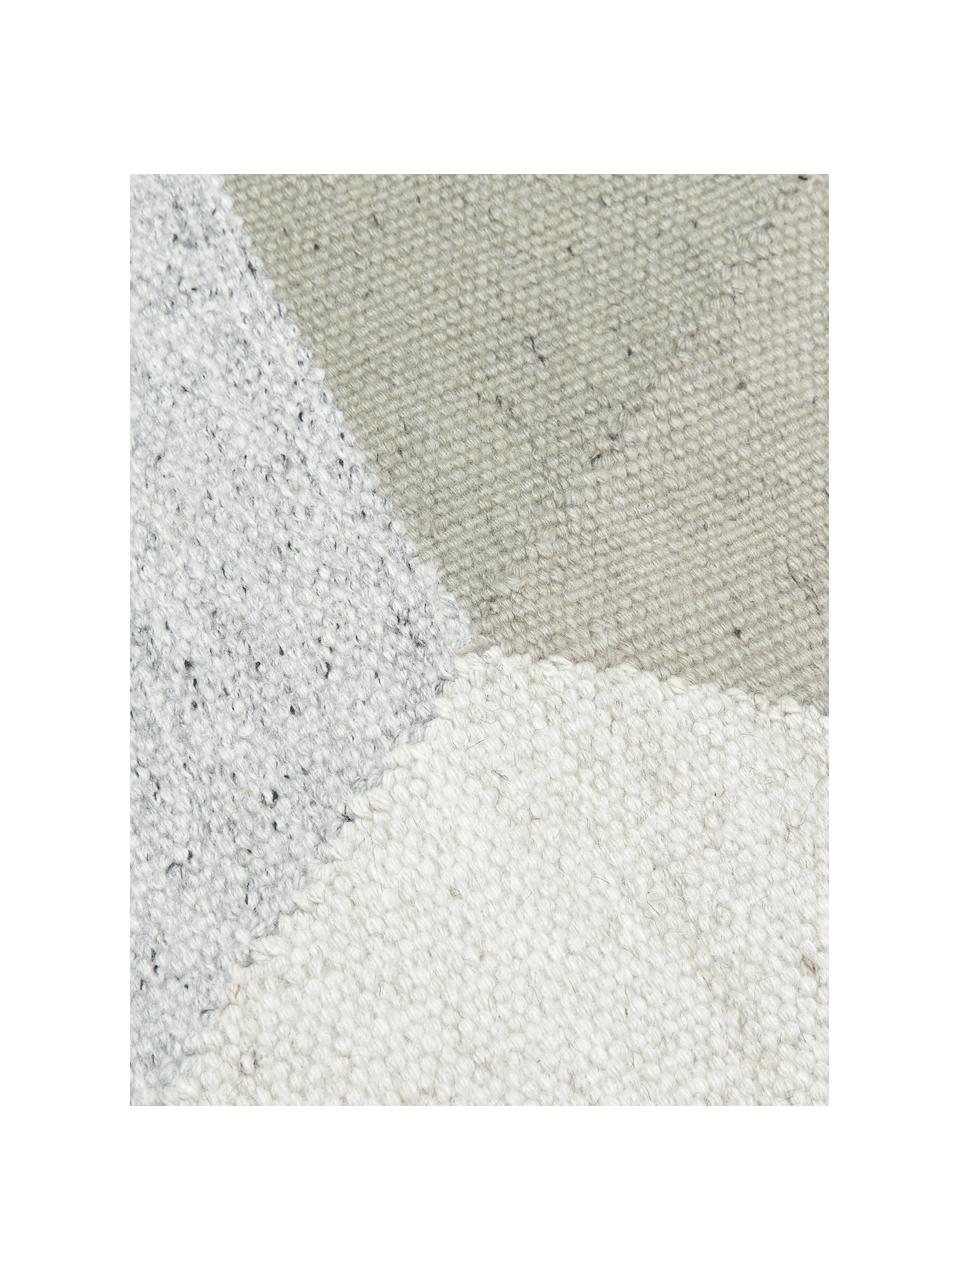 Handgewebter Viskoseteppich Snefrid mit abstraktem Muster, 80% Viskose, 20% Wolle, Grün, Grau, Beige, B 200 x L 300 cm (Grösse L)